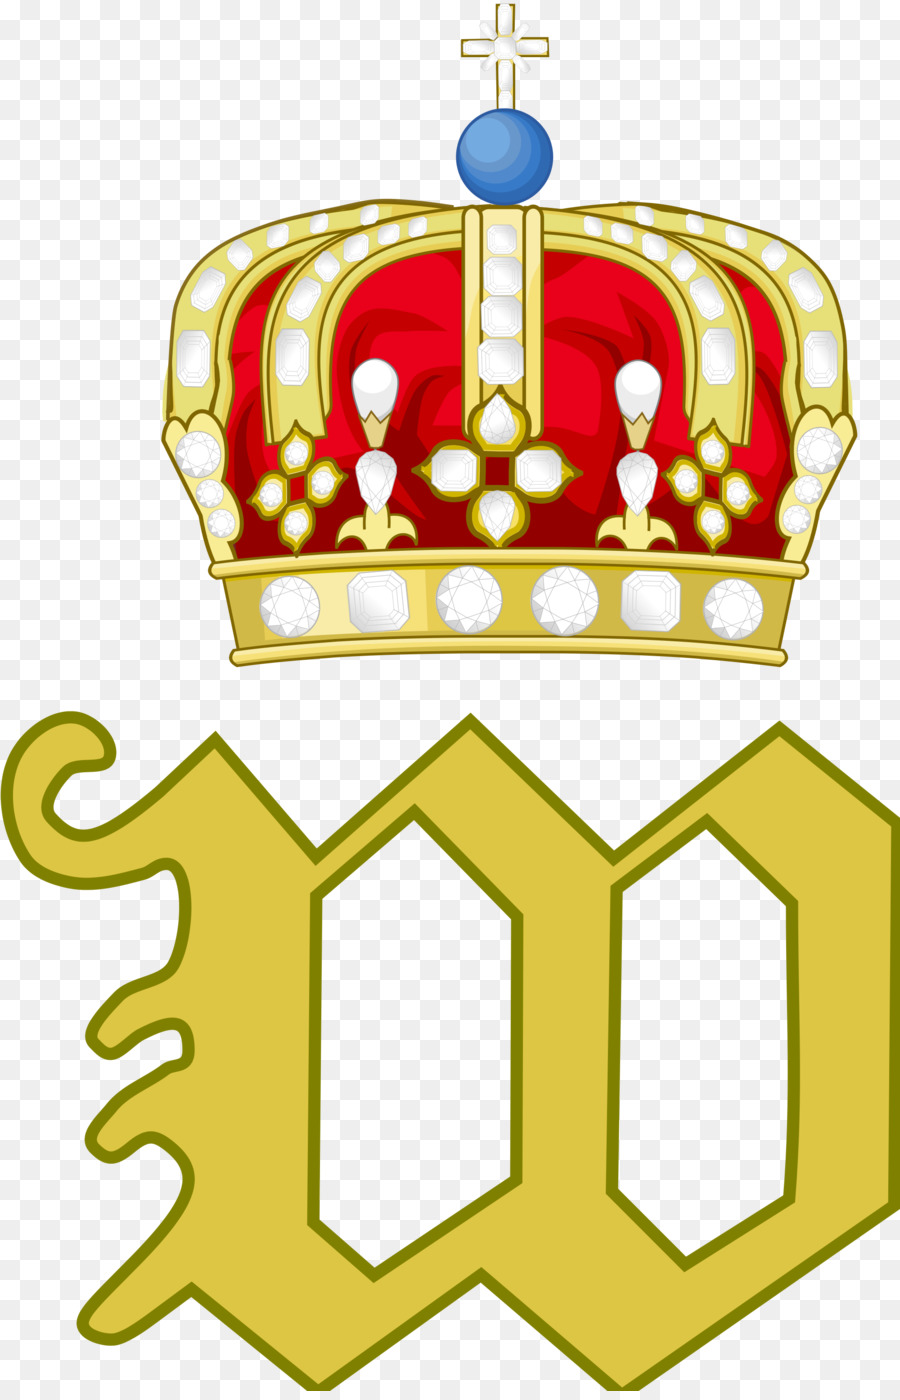 Königreich Preußen Norddeutscher Bund Wappen von Preußen - norwegen königreich png könig